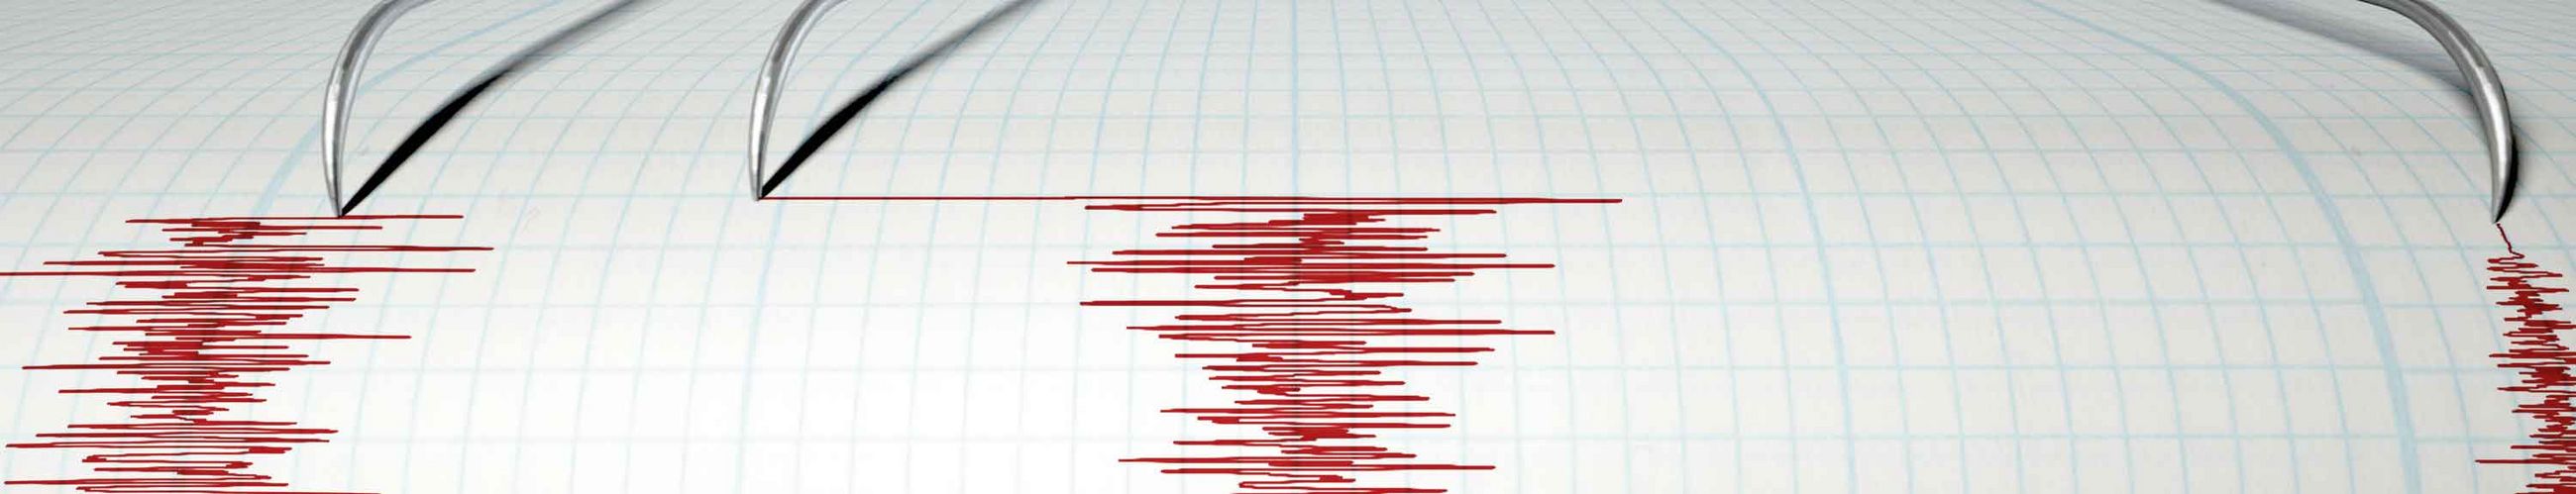 Die wellenförmigen Aufzeichnungen eines Seismographen sind auf einem Blatt Papier zu sehen.